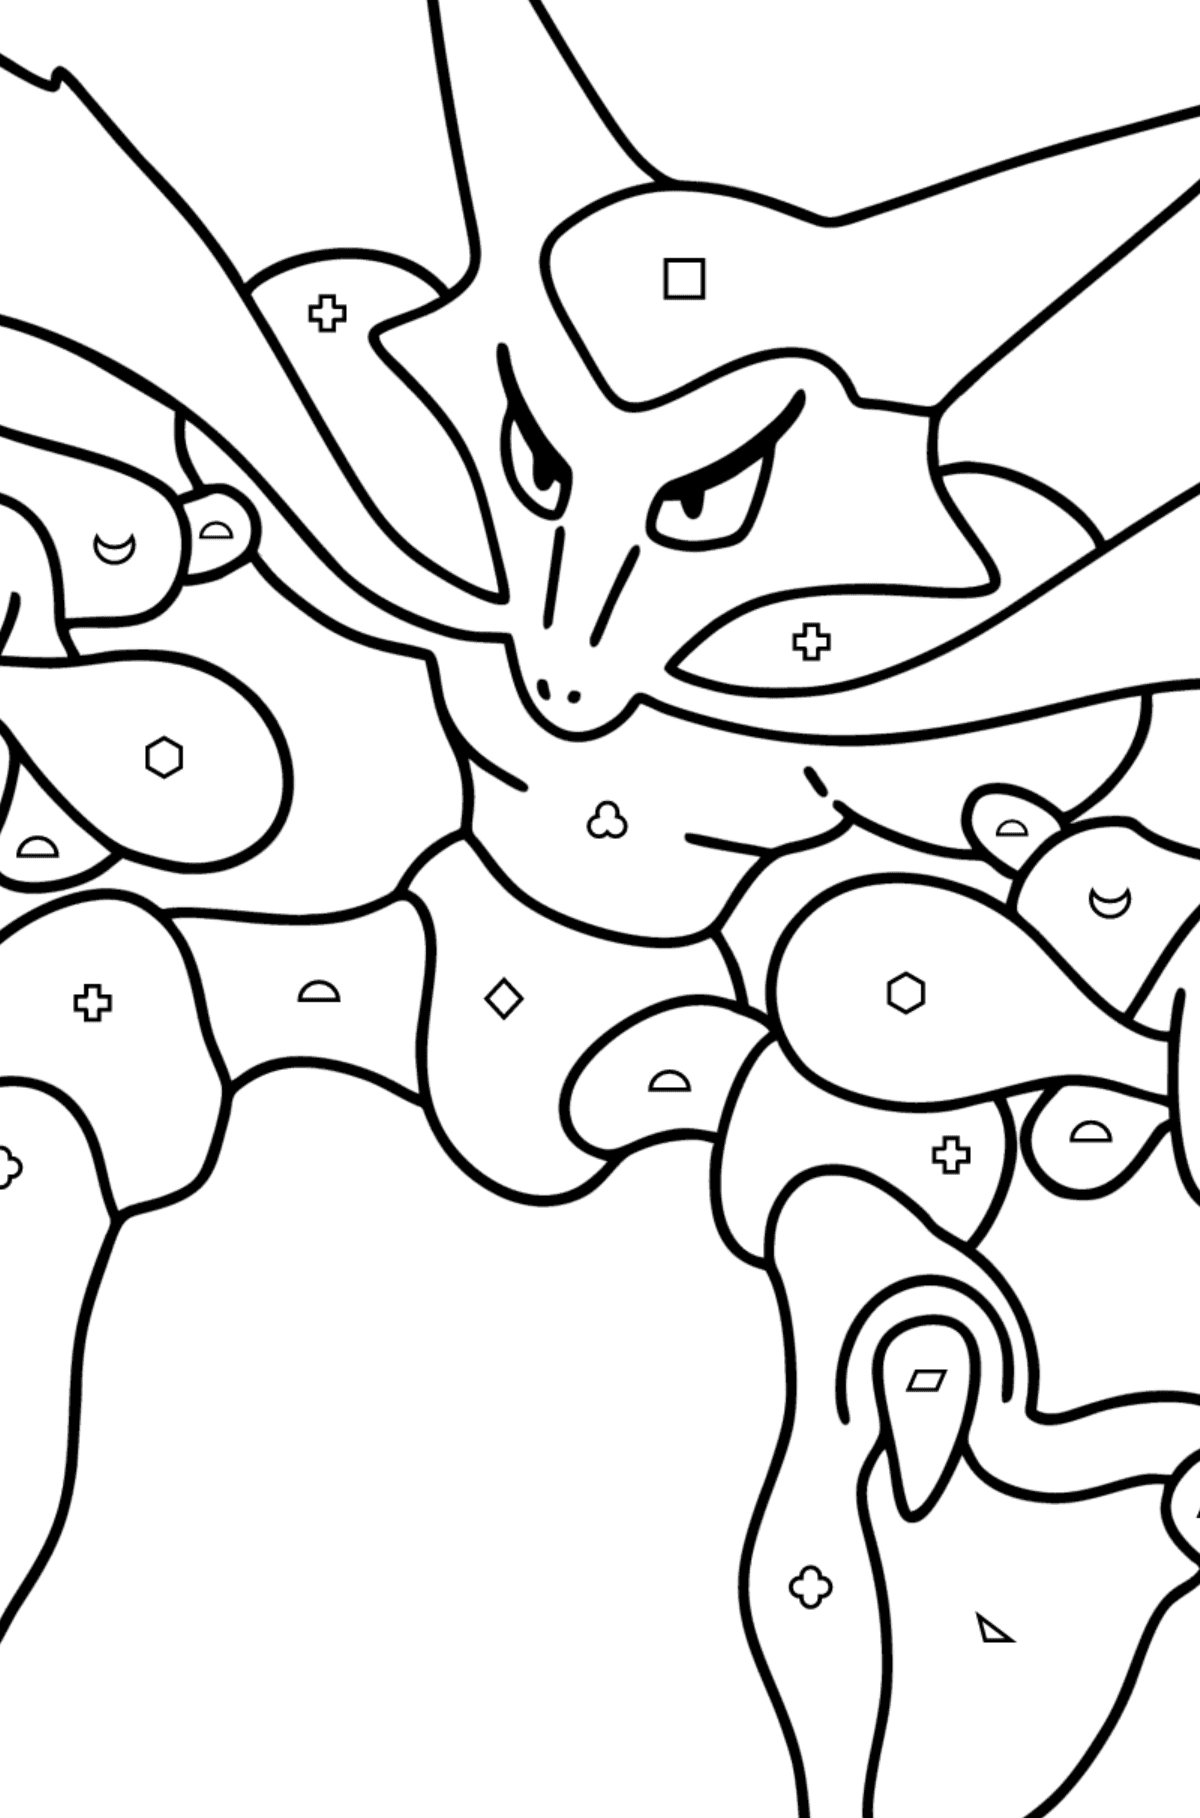 Målarbild Pokémon Go Alakazam - Färgläggning av geometriska former För barn